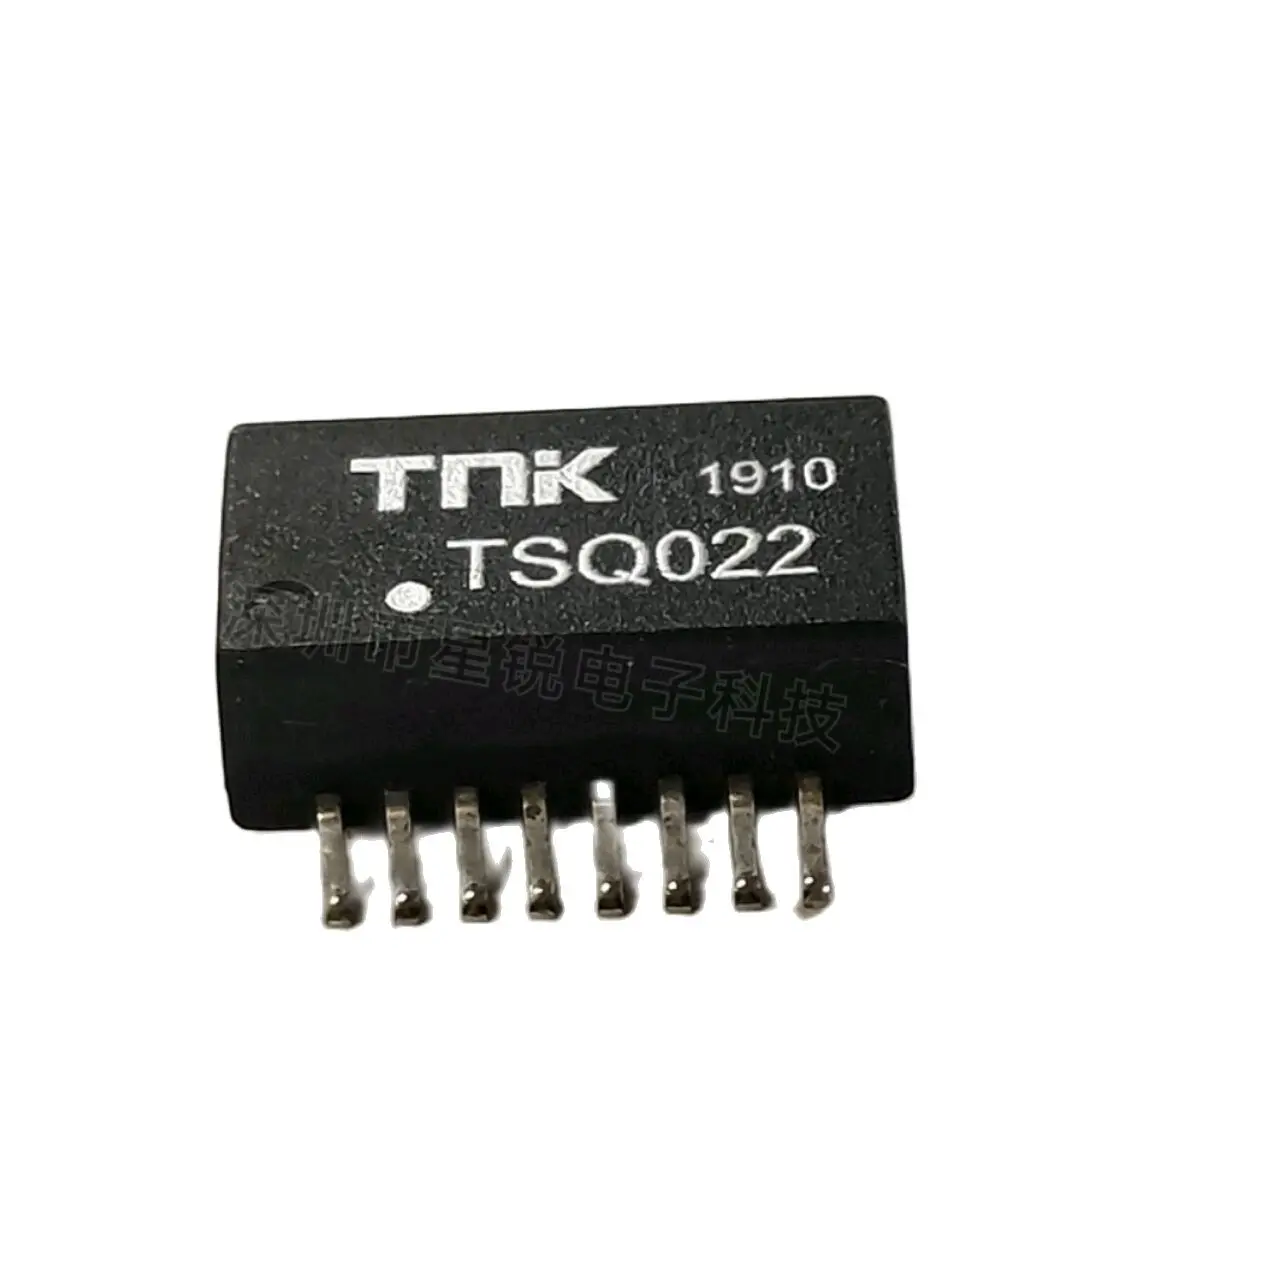 

10 шт./сетевой трансформатор TSQ022 TNK SOP16, абсолютно новый оригинальный Оригинальный оригинальный, для прямой съемки, гарантия качества